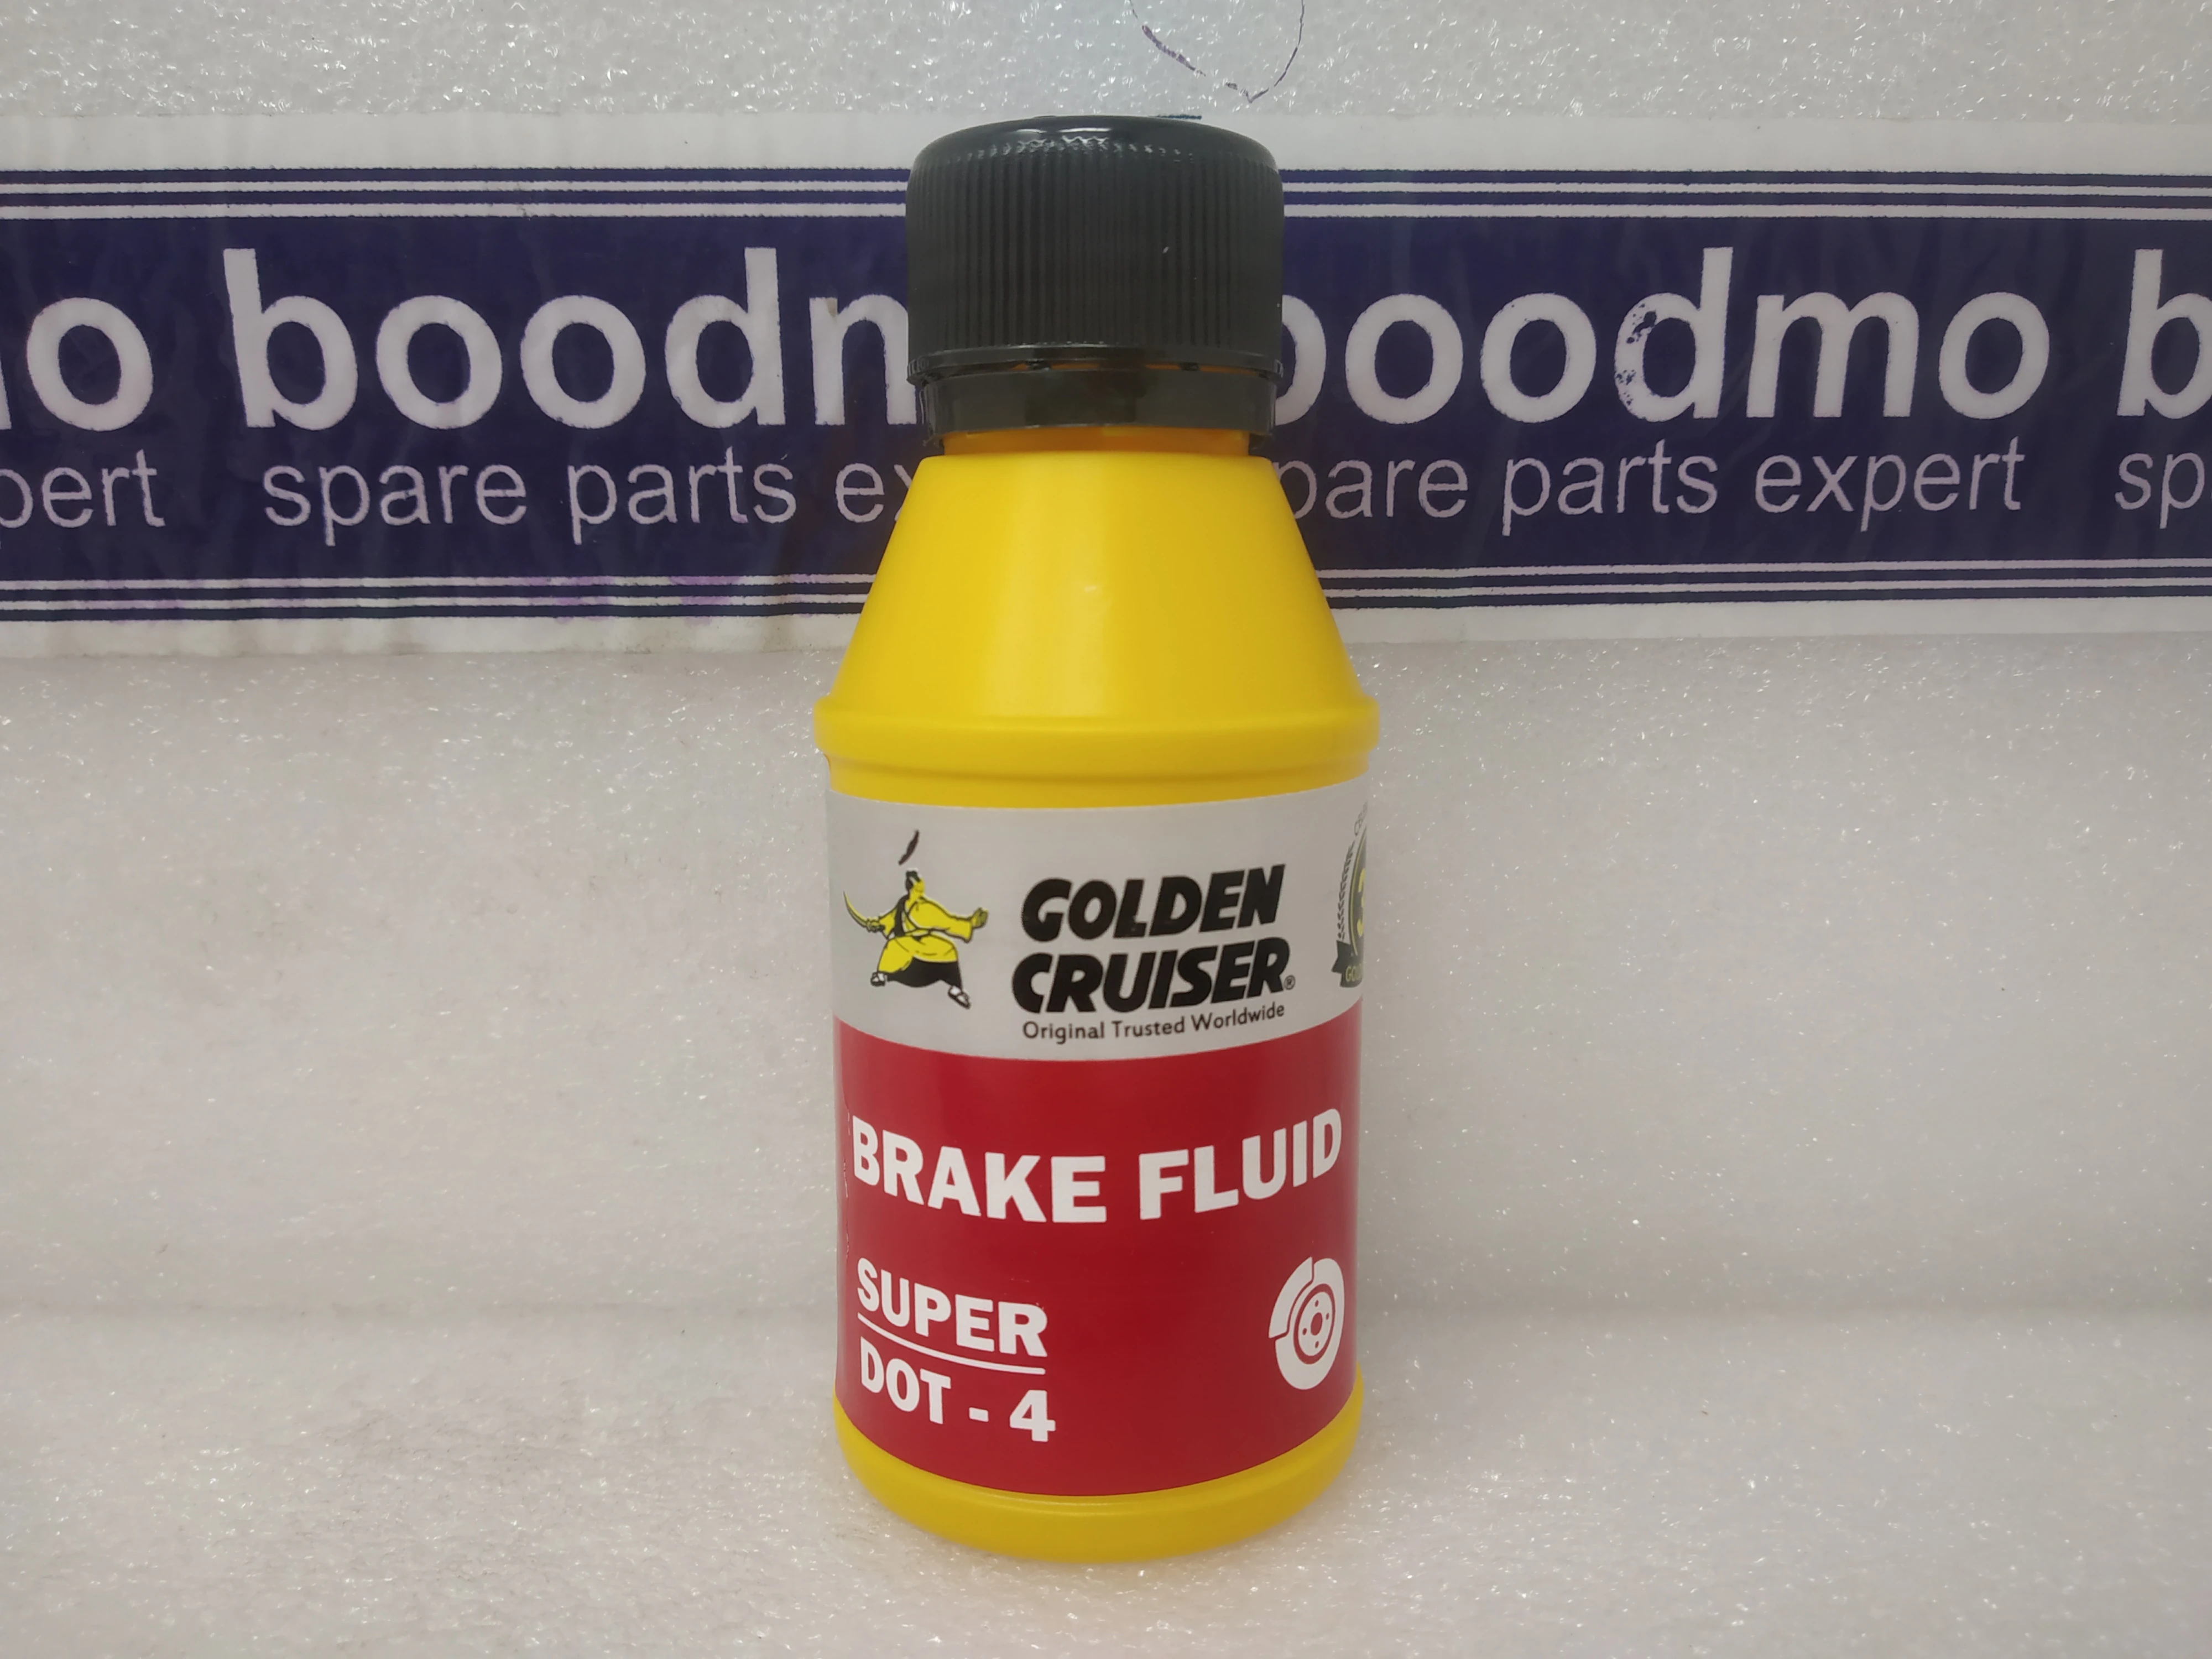 Golden Cruiser Ford Super Dot 4 Brake Fluid